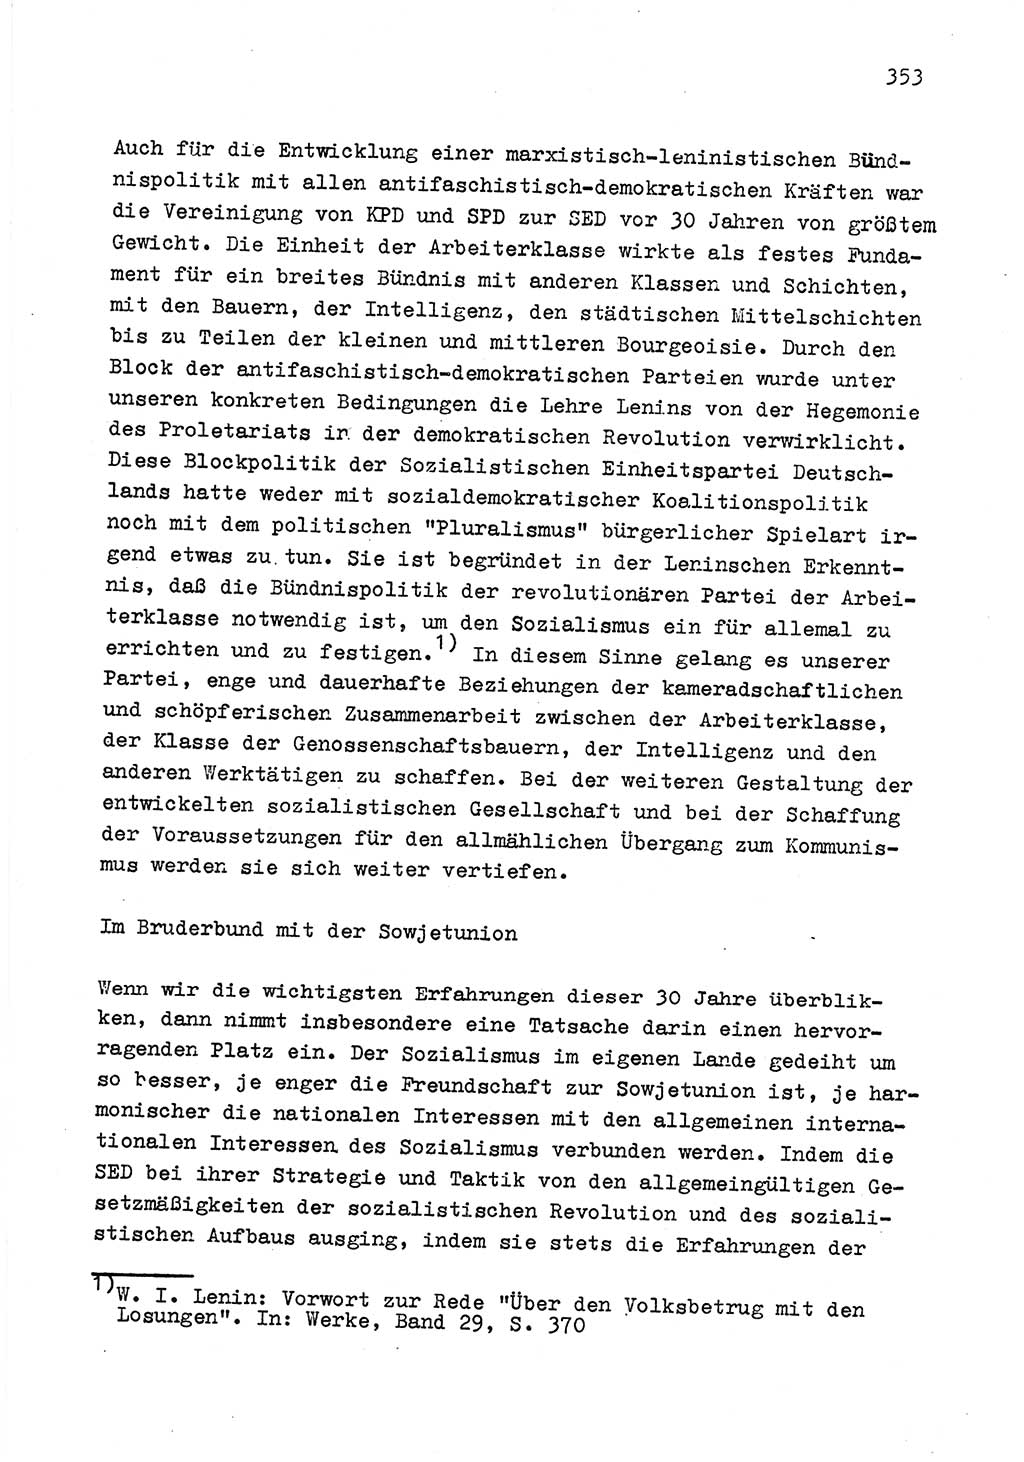 Zu Fragen der Parteiarbeit [Sozialistische Einheitspartei Deutschlands (SED) Deutsche Demokratische Republik (DDR)] 1979, Seite 353 (Fr. PA SED DDR 1979, S. 353)